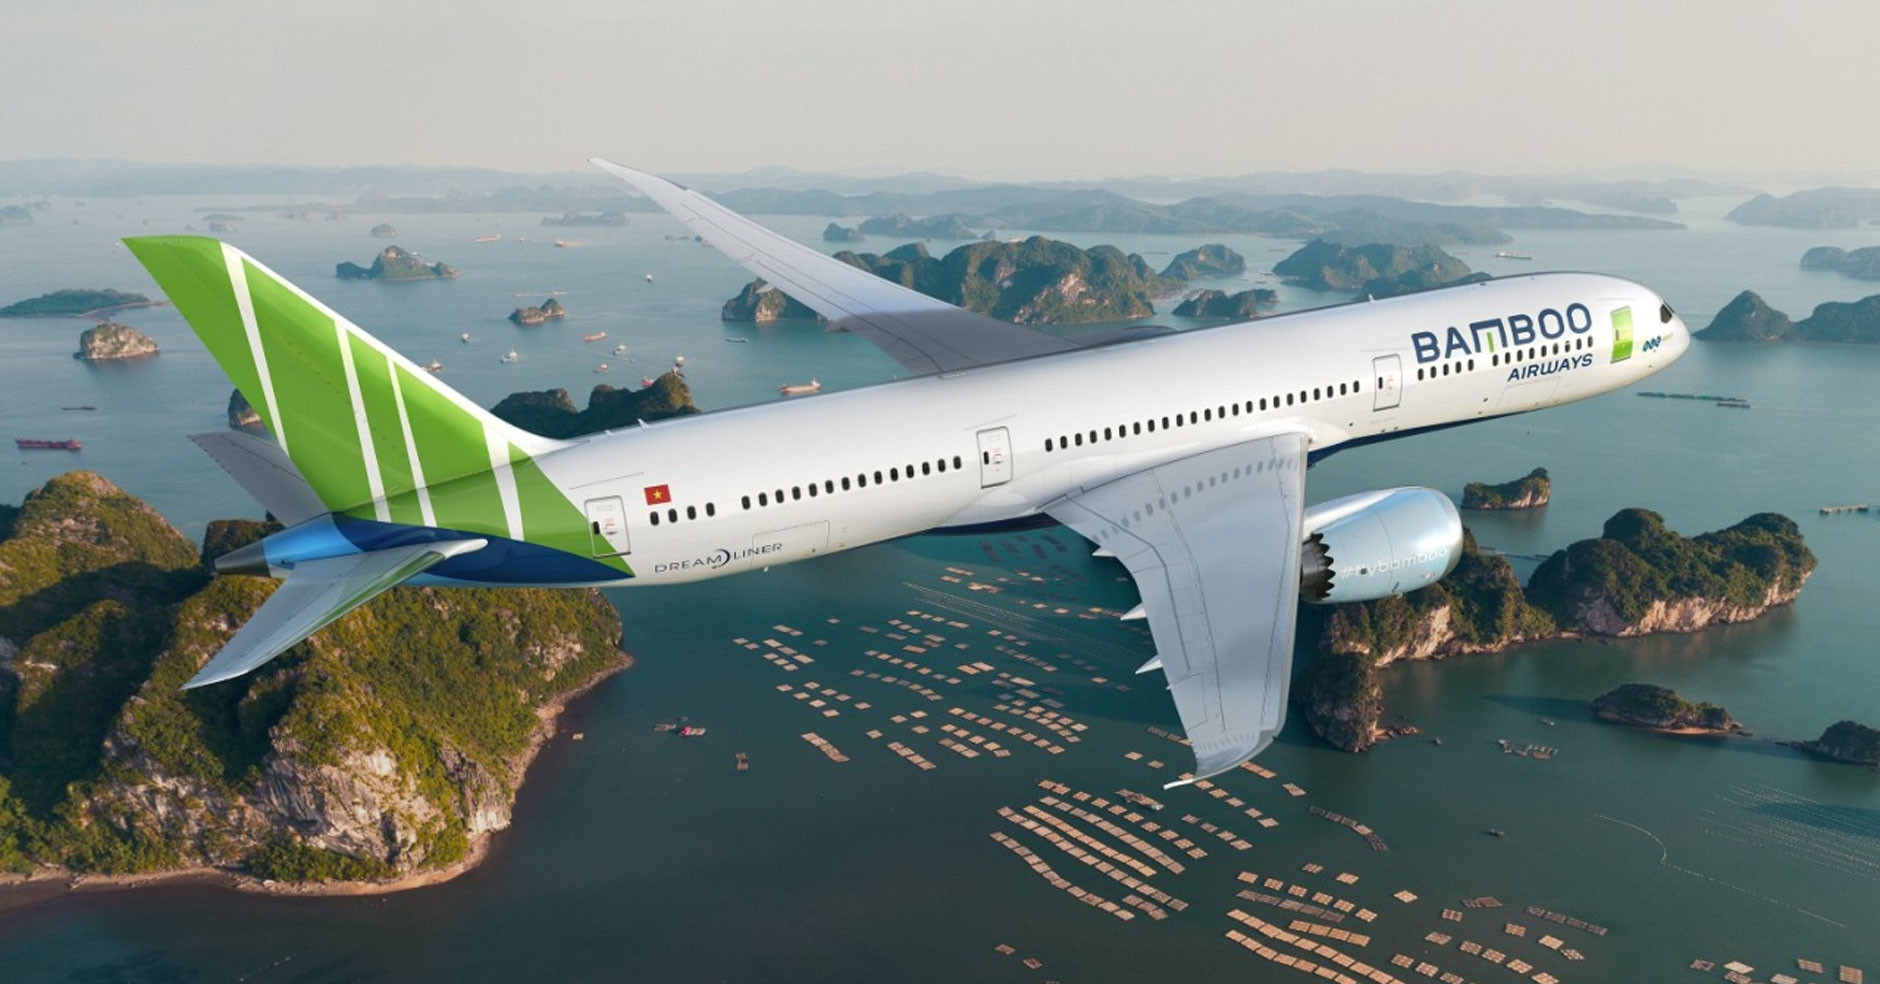 NCB chuyển nhượng 203 triệu cổ phần Bamboo Airways, bật mí giá chuyển nhượng